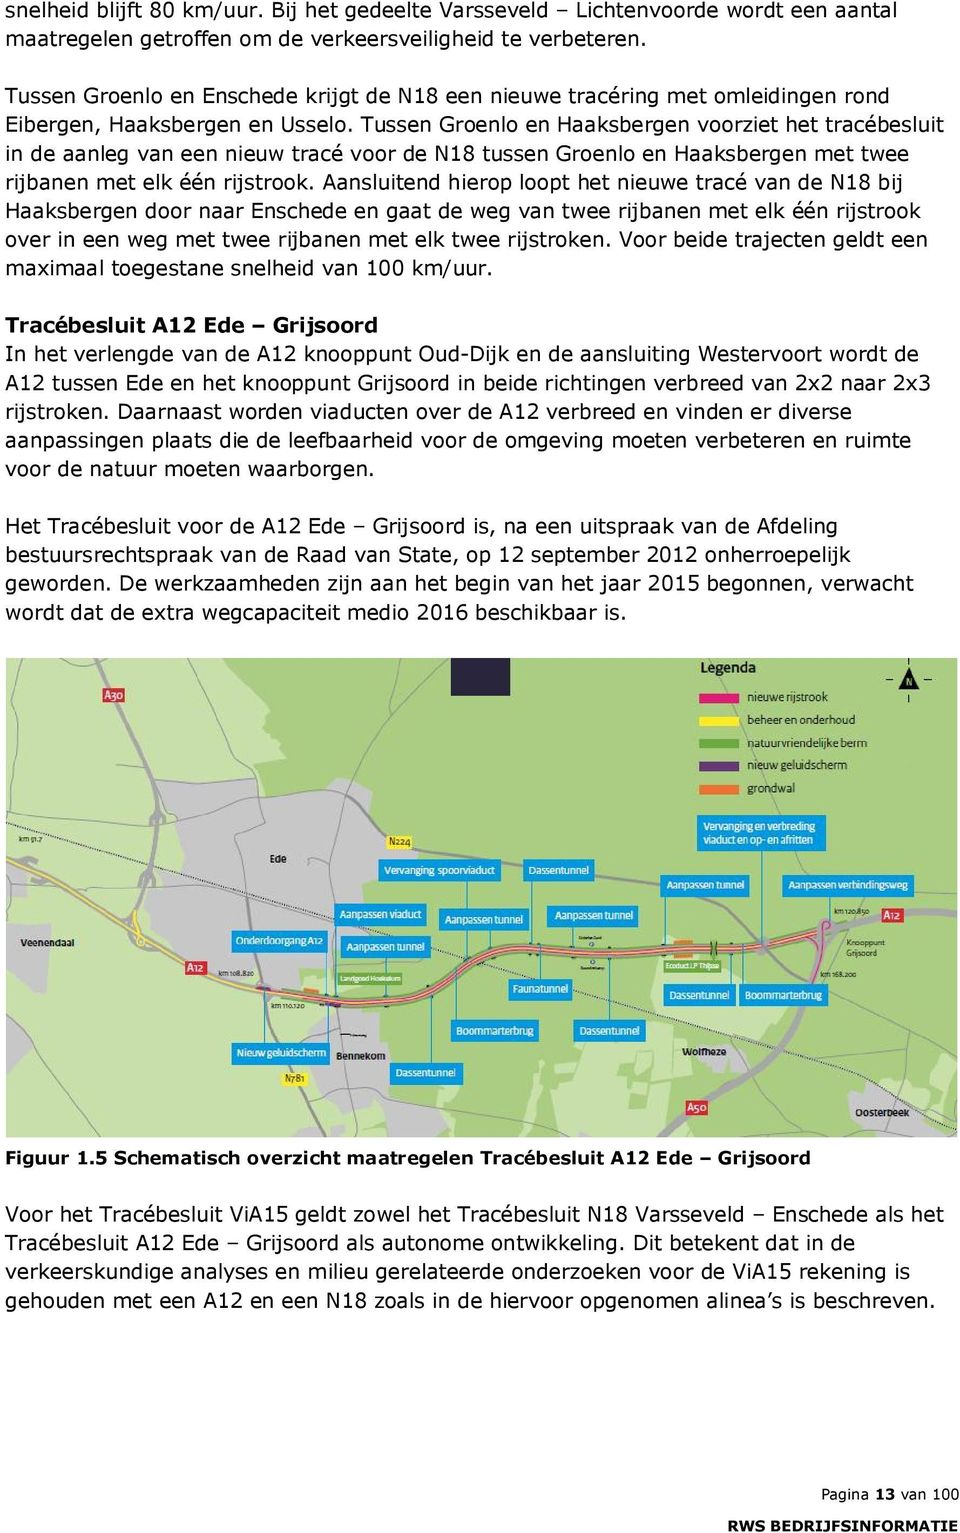 Tussen Groenlo en Haaksbergen voorziet het tracébesluit in de aanleg van een nieuw tracé voor de N18 tussen Groenlo en Haaksbergen met twee rijbanen met elk één rijstrook.